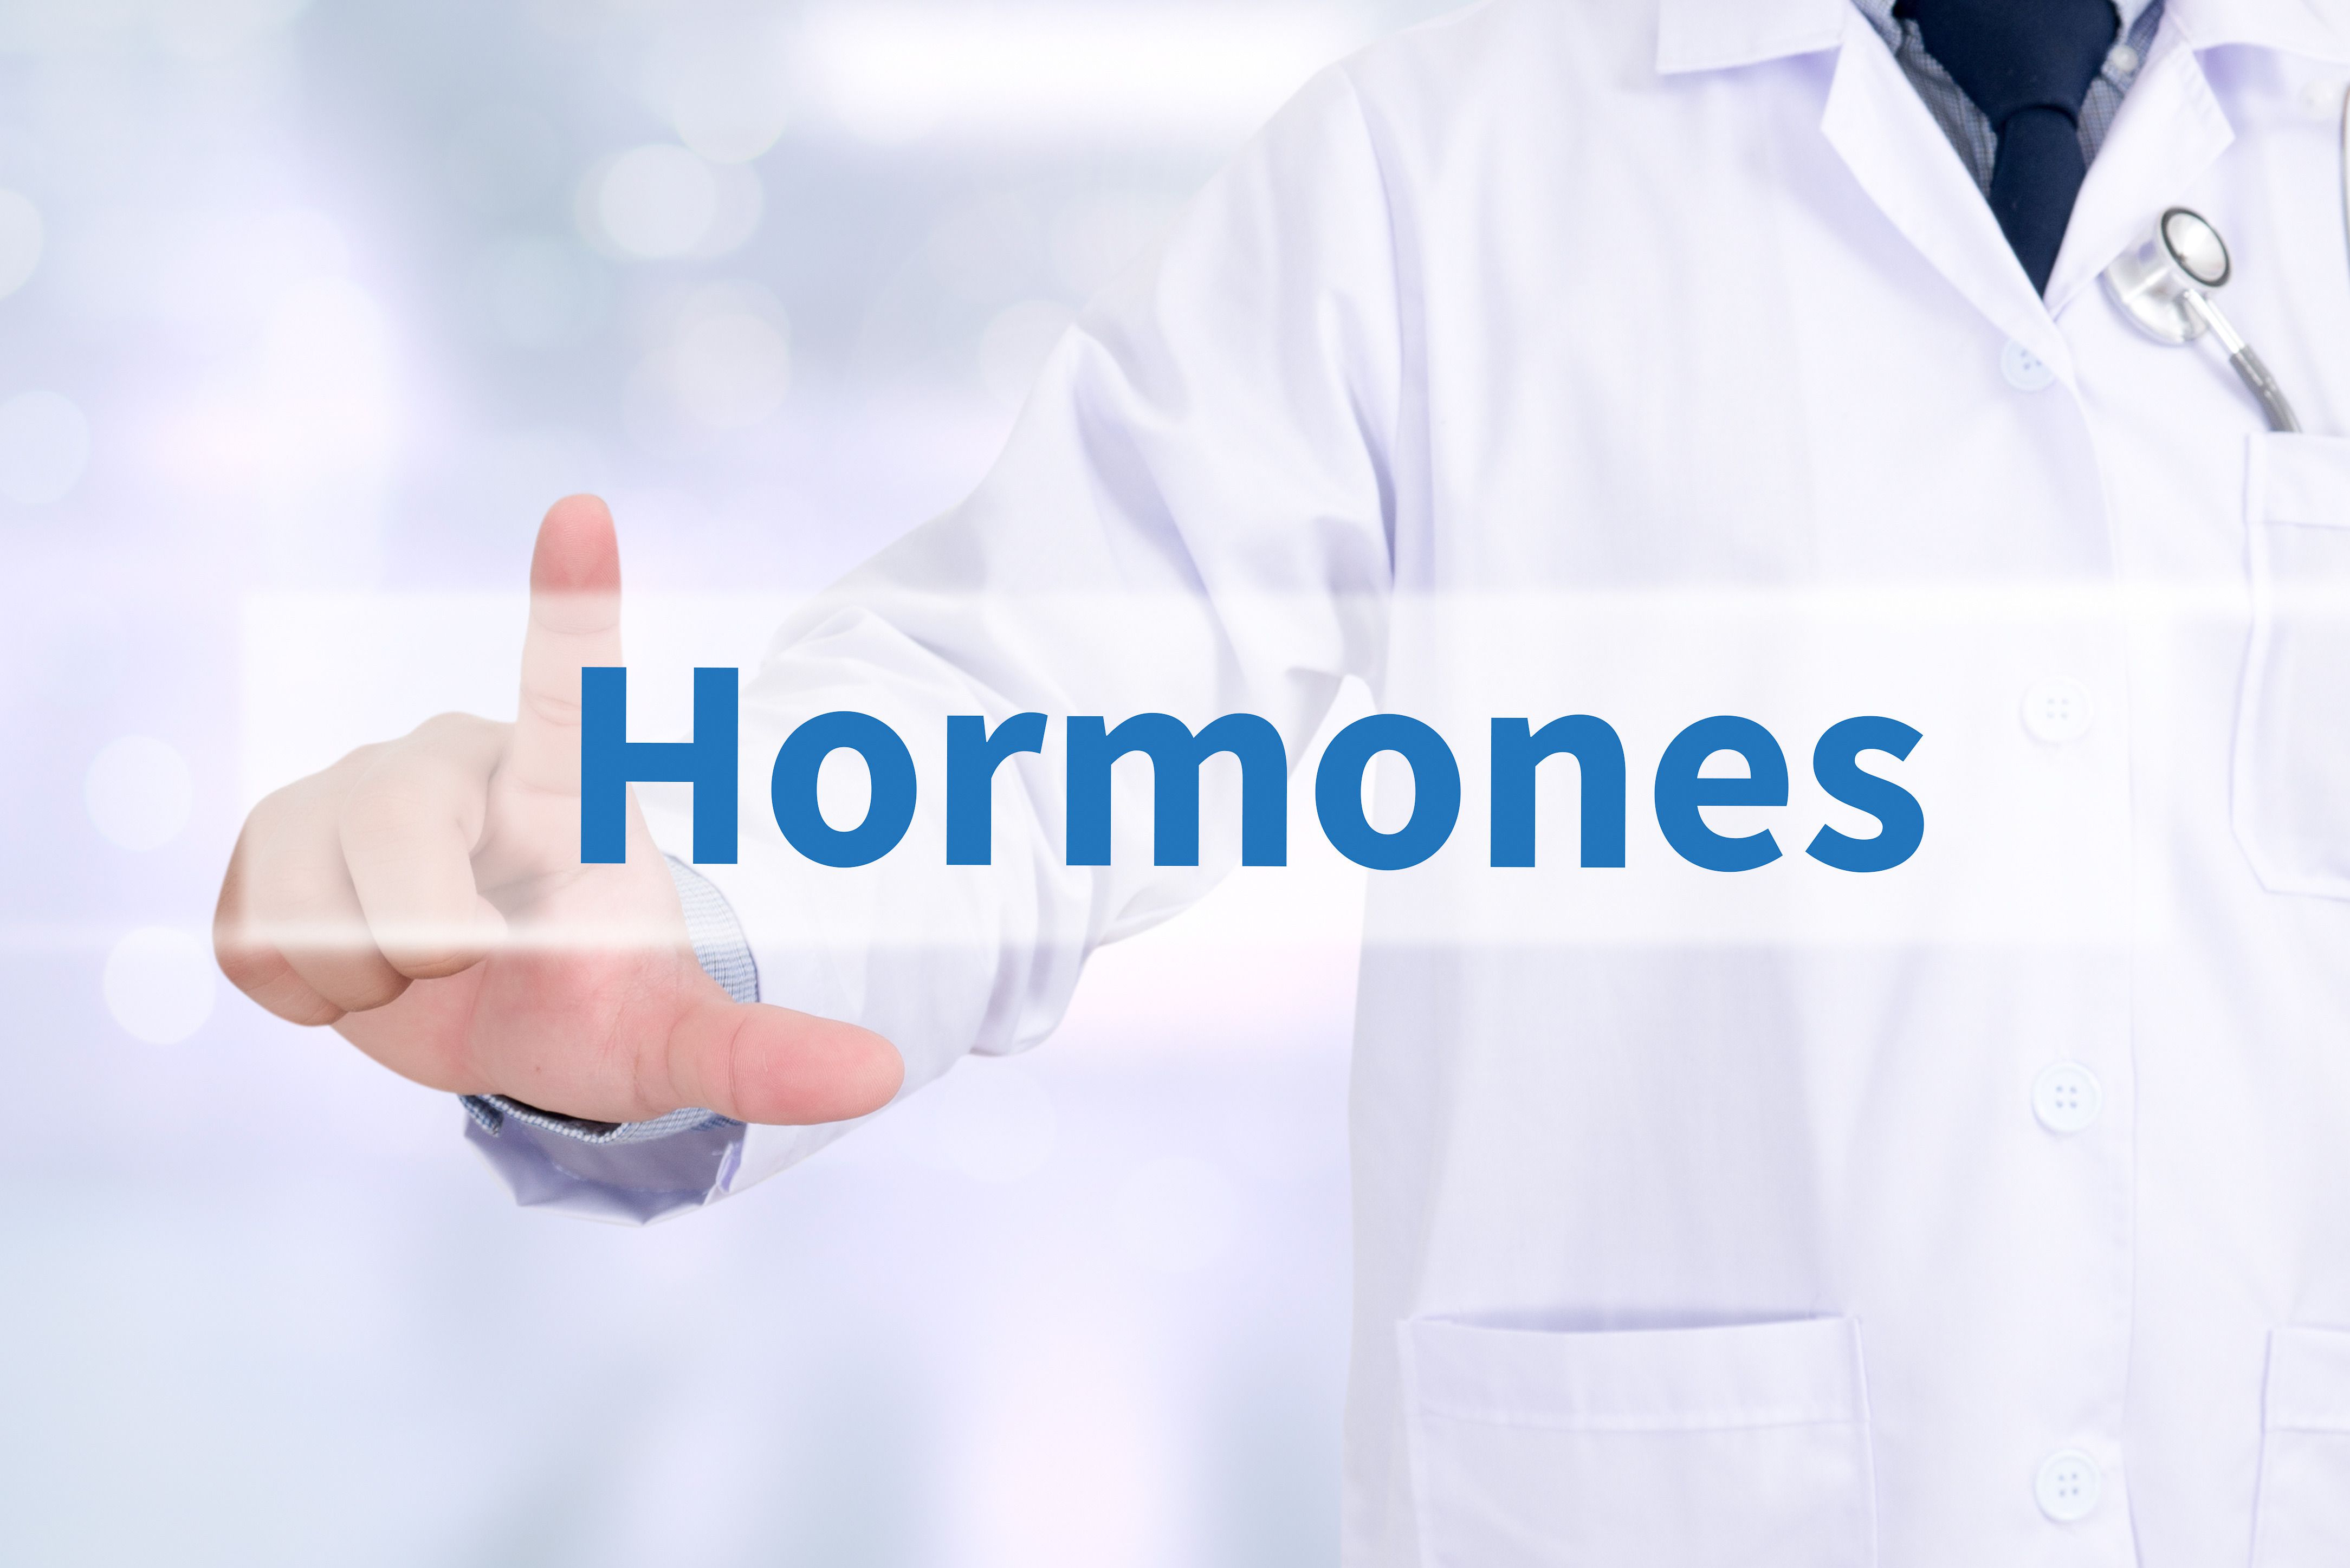 Як перехитрити гормони, через які ми набираємо зайву вагу. Ось цікава інформація про гормони, які можуть стати однією з перешкод на шляху до тіла вашої мрії.